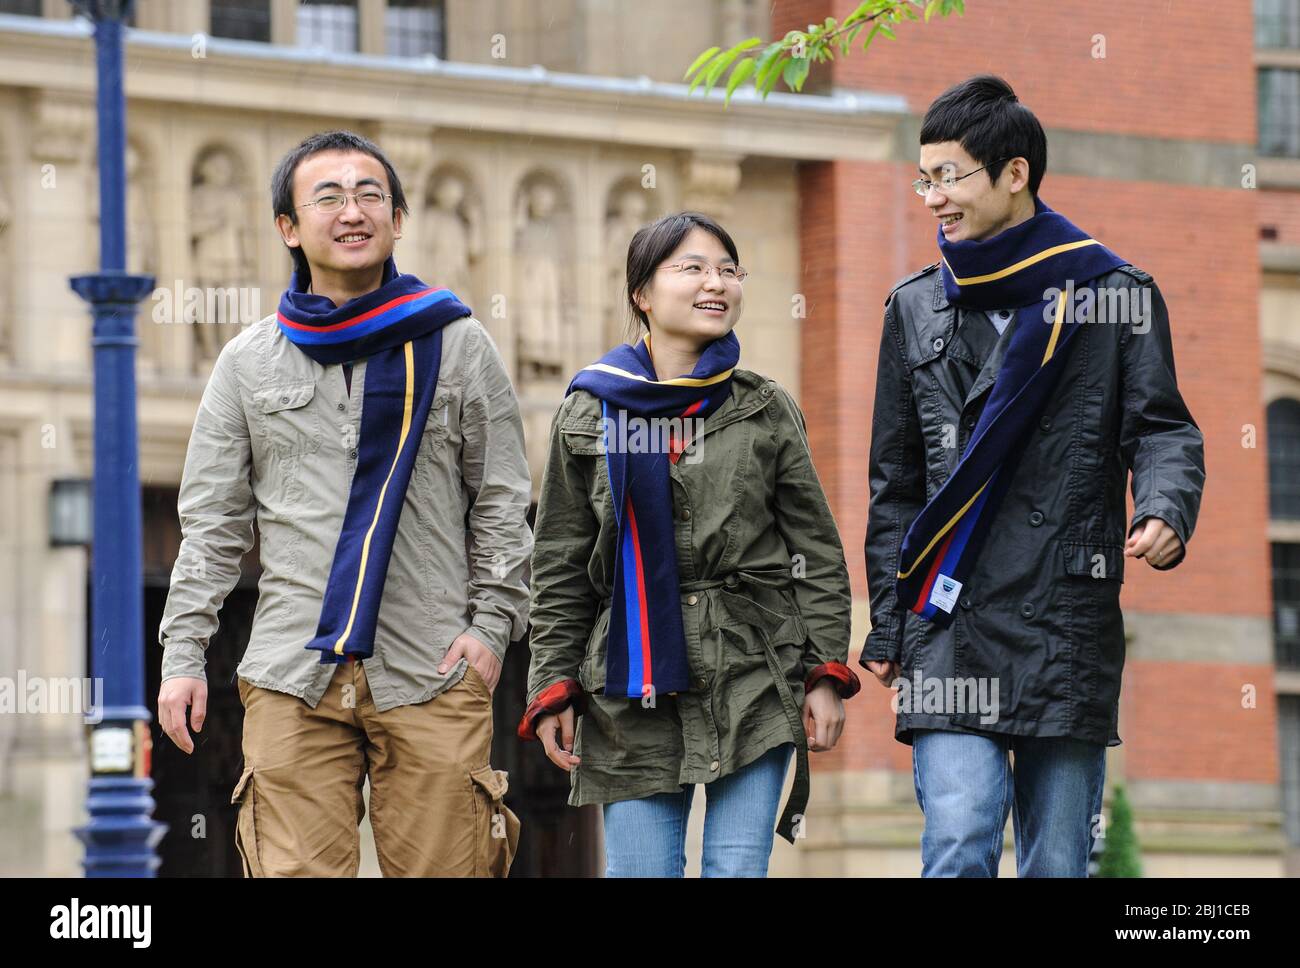 Eine Gruppe ausländischer (chinesischer) Studenten geht über den Campus der Universität Birmingham, England, Großbritannien. Stockfoto